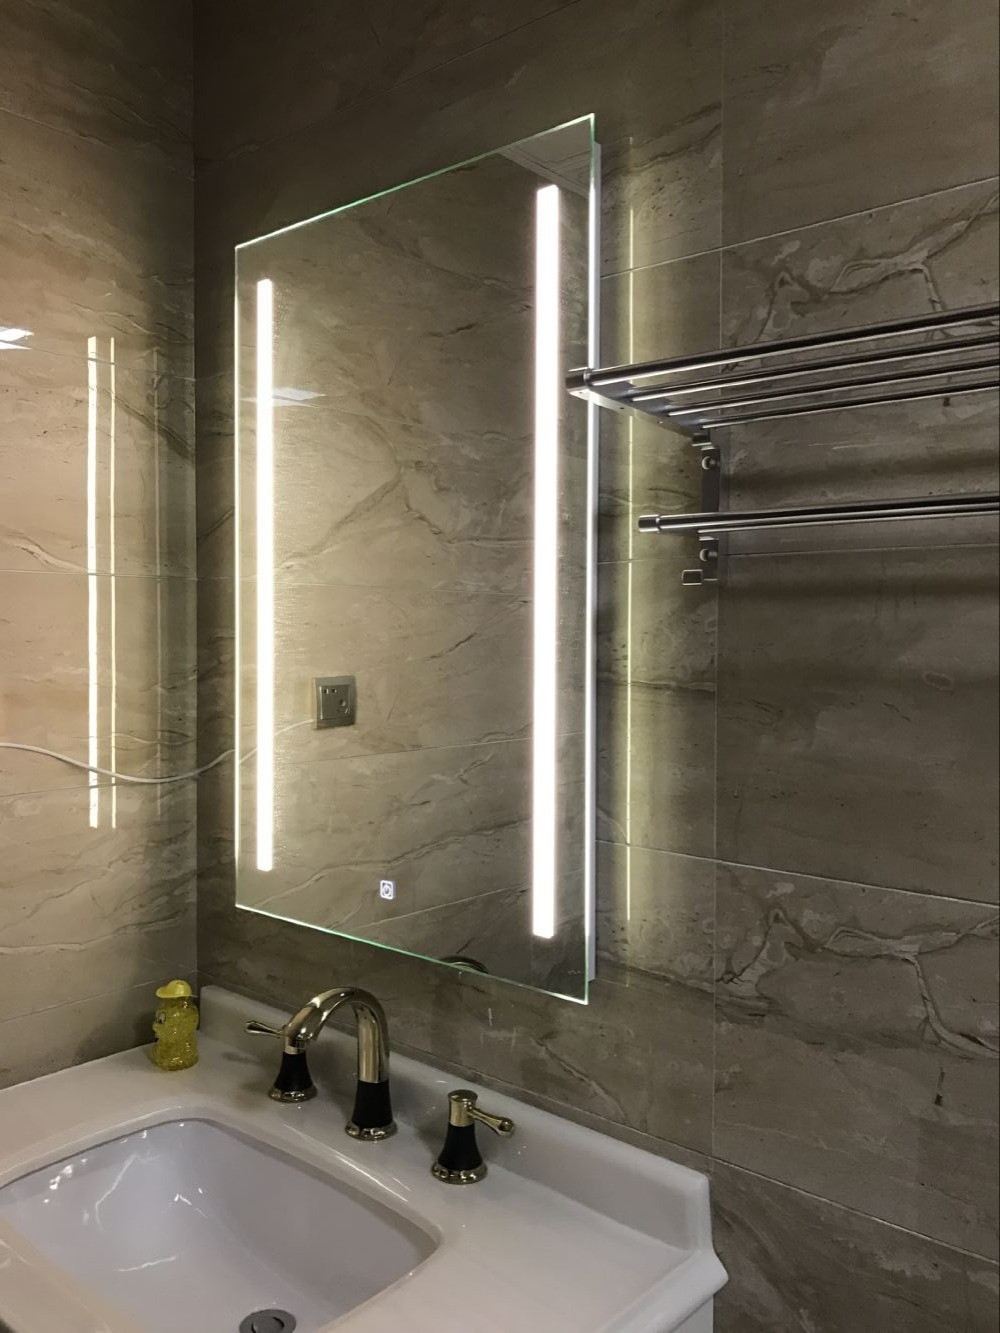 Vertical Bathroom Light
 Waterproof Wall Mount Led Lighted Bathroom Mirror Vanity